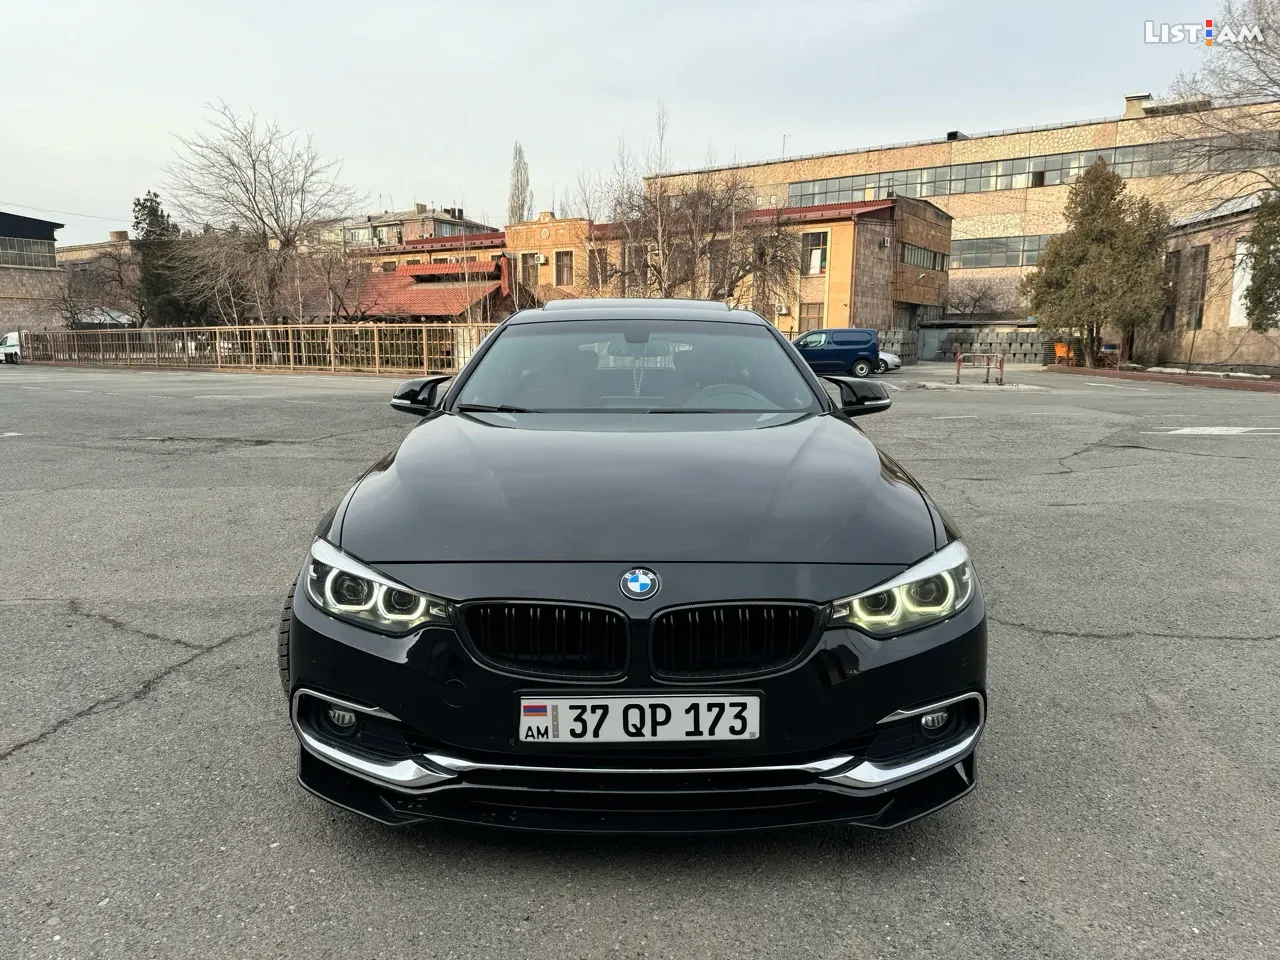 BMW 4 Series, 2.0 լ, լիաքարշ, 2018 թ. - Ավտոմեքենաներ - List.am